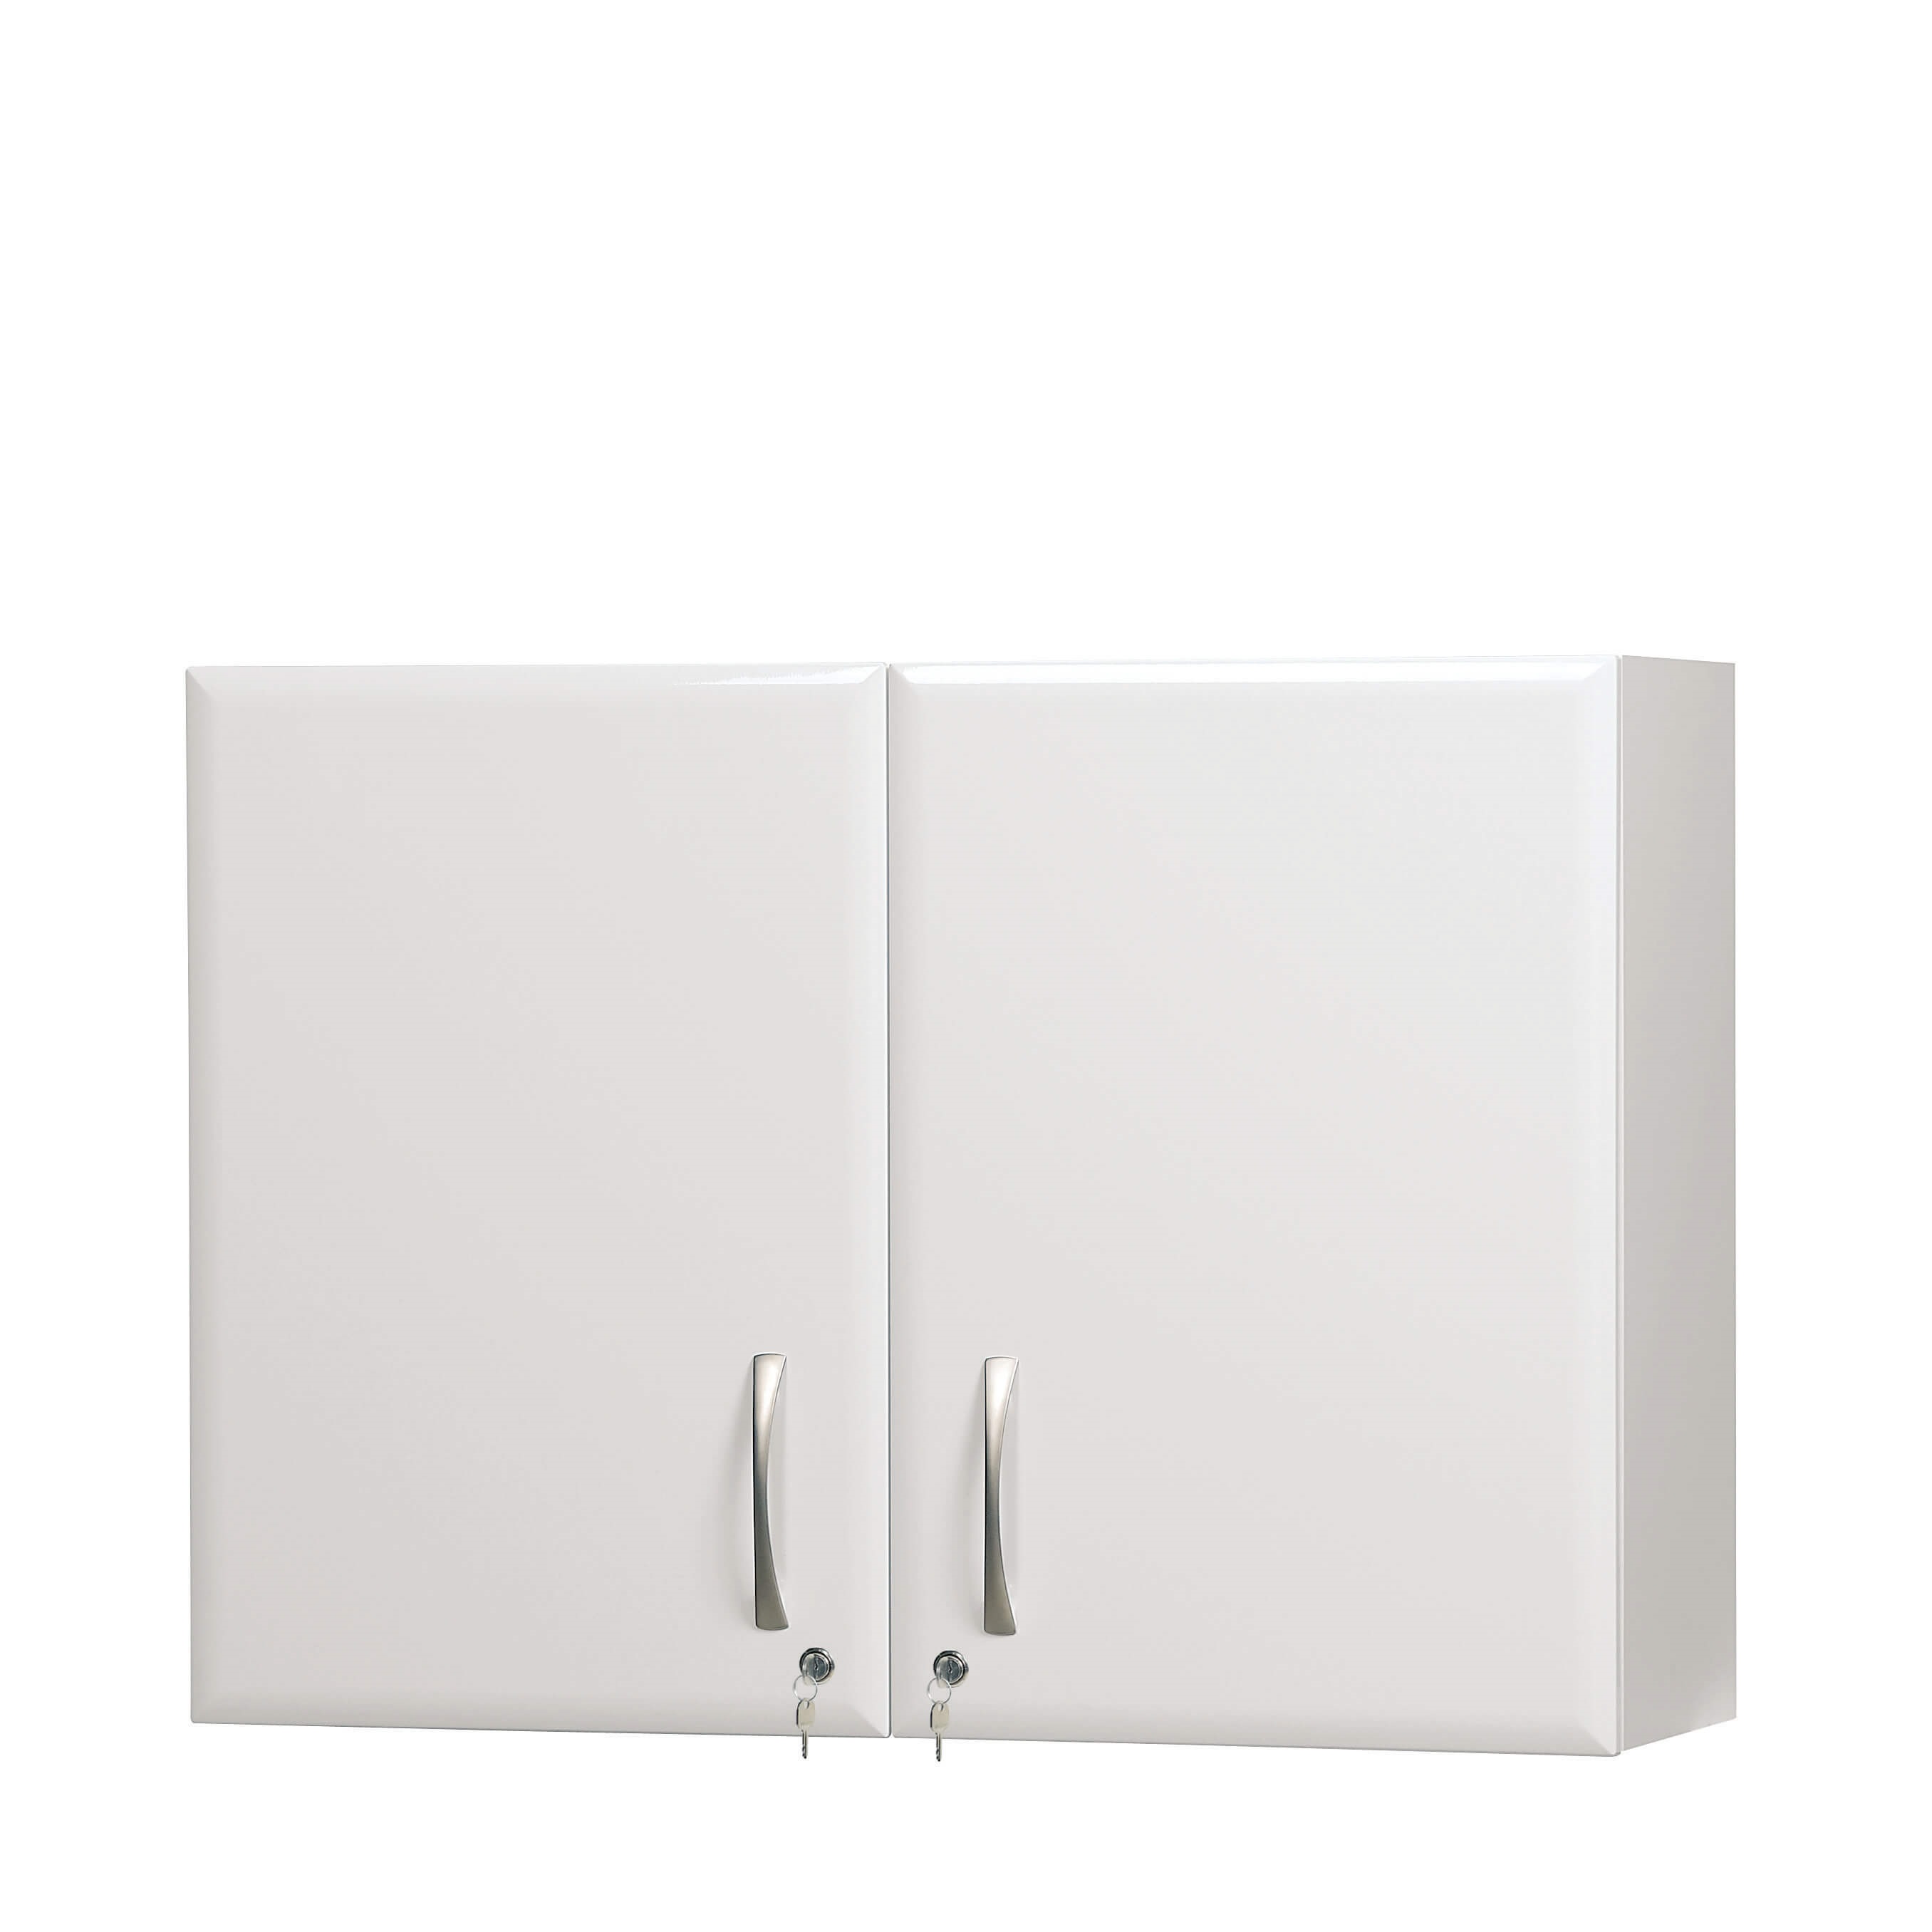 100cm Wall Cabinet - White High Gloss Finish [Sun-WU3W]